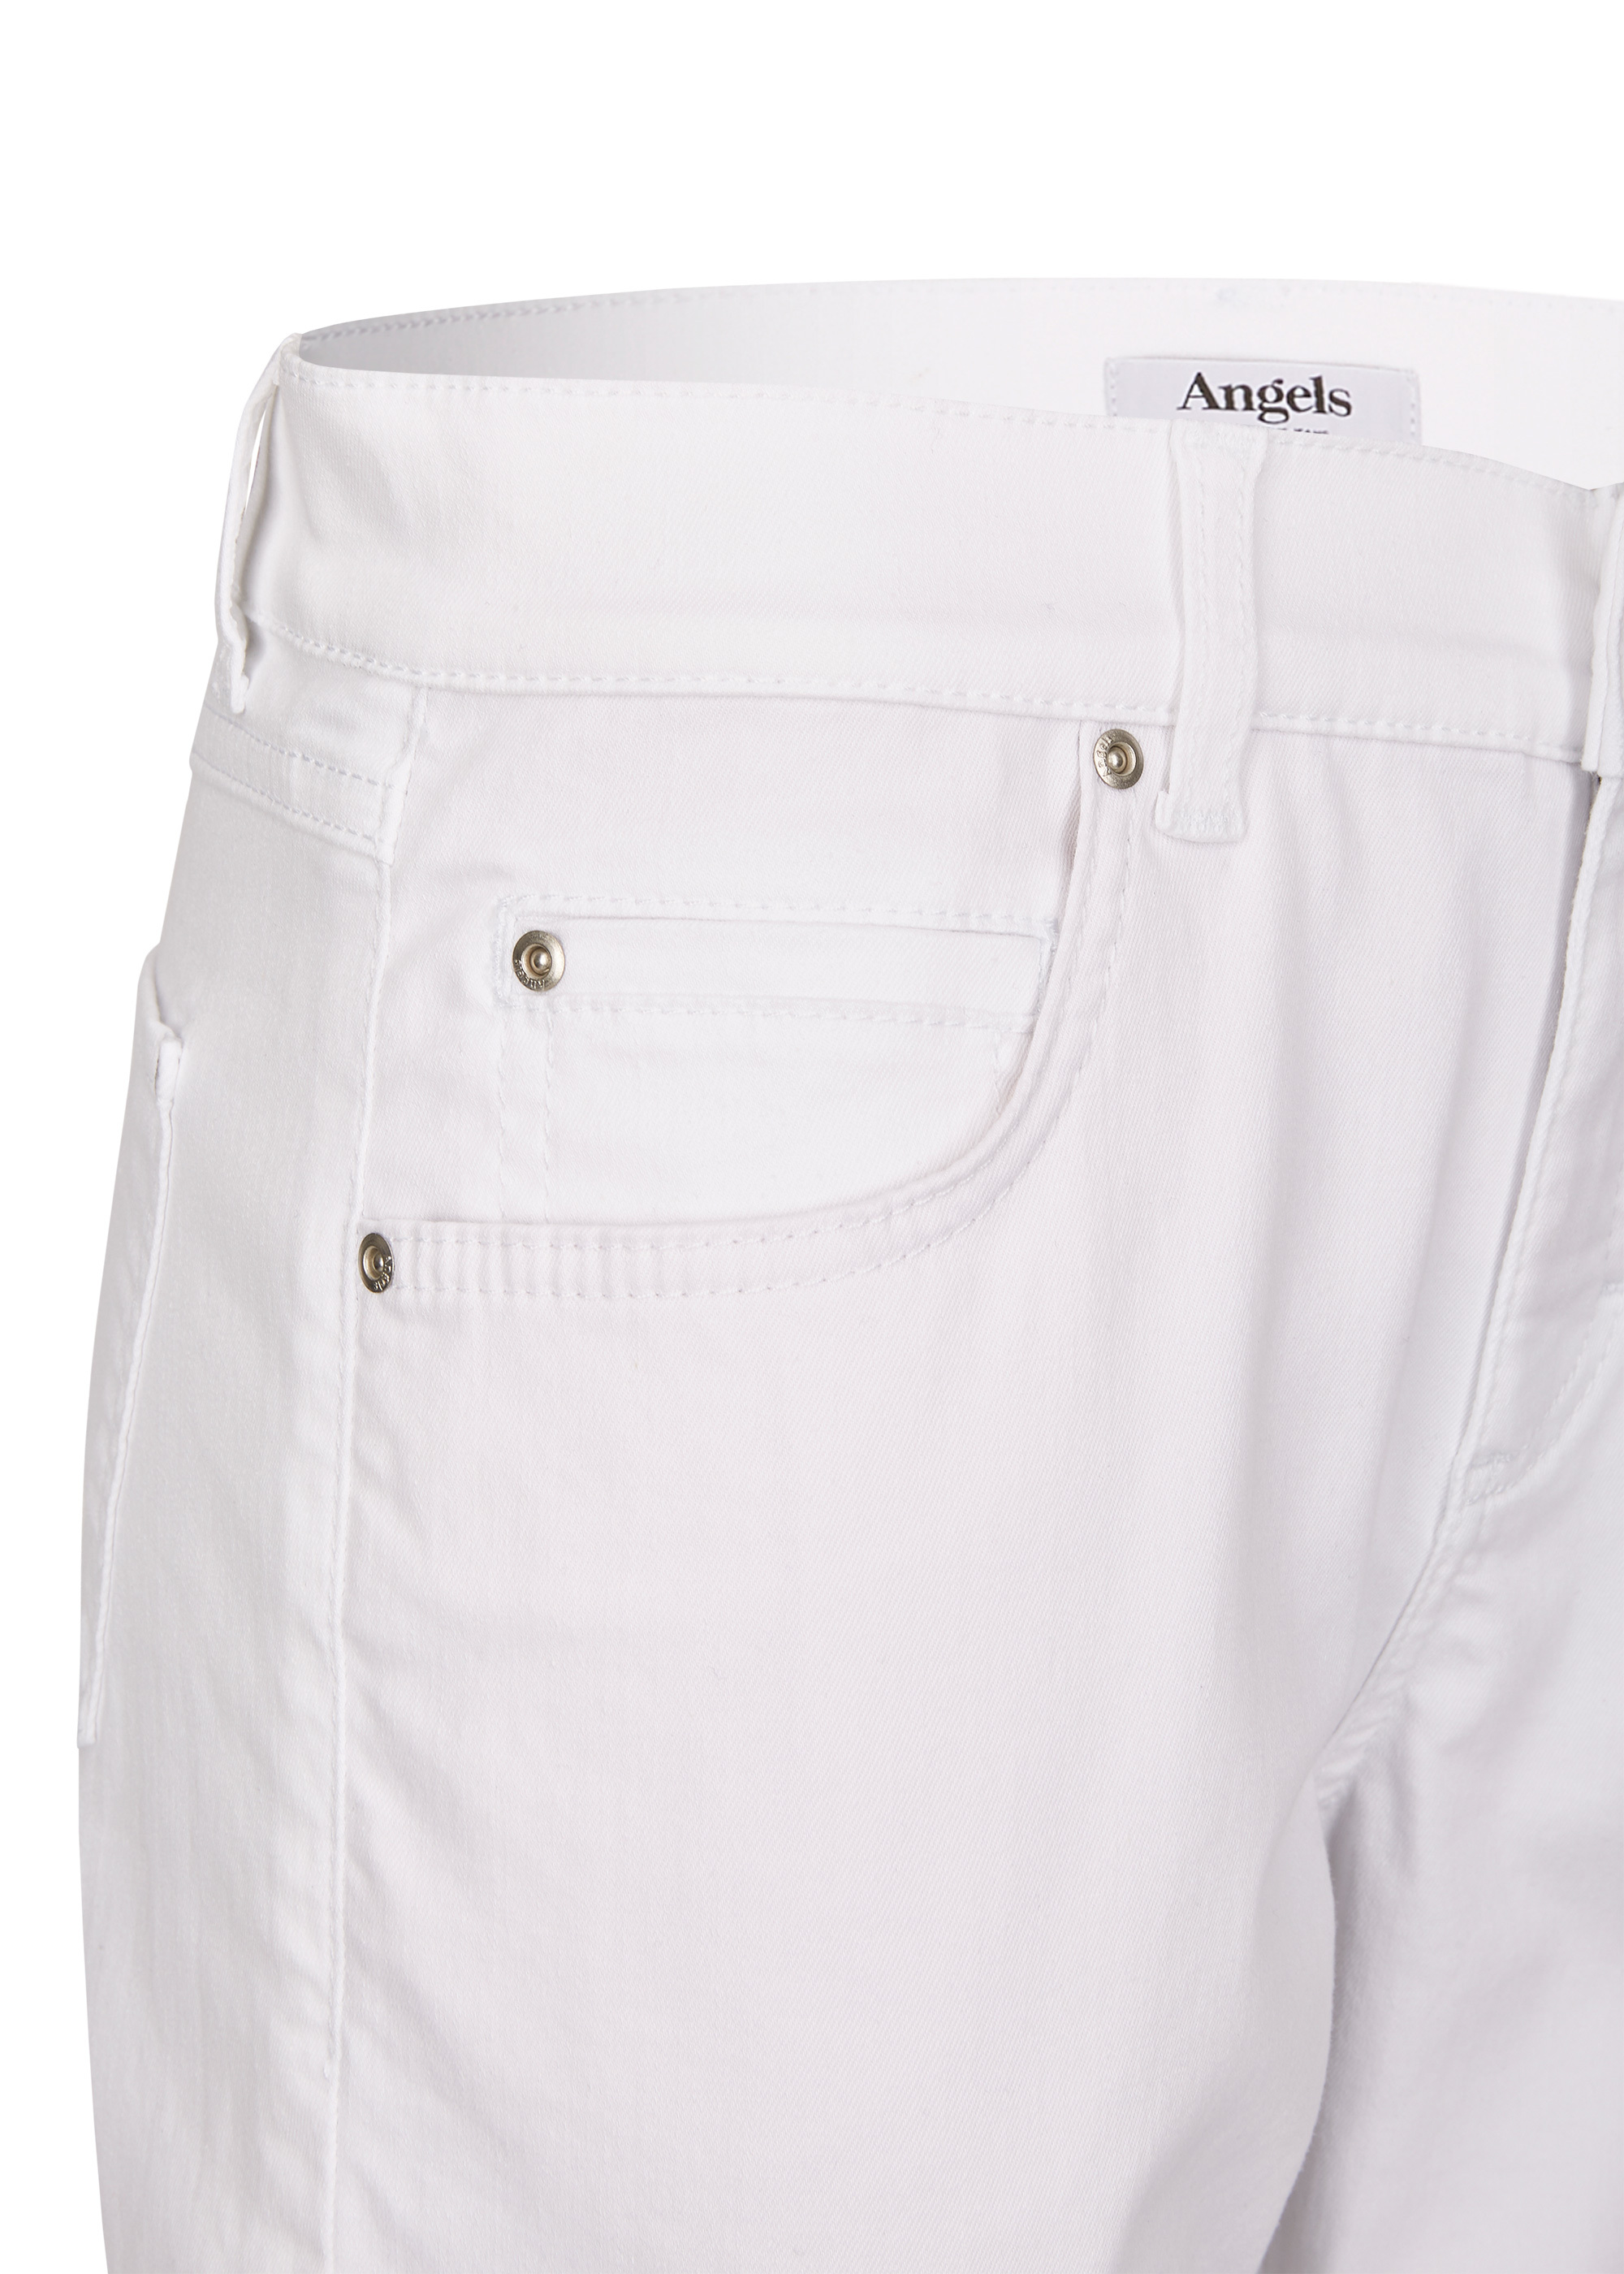 Angels Capri-Jeans ,Cici TU mit leichter Used-Waschung in Weiß 